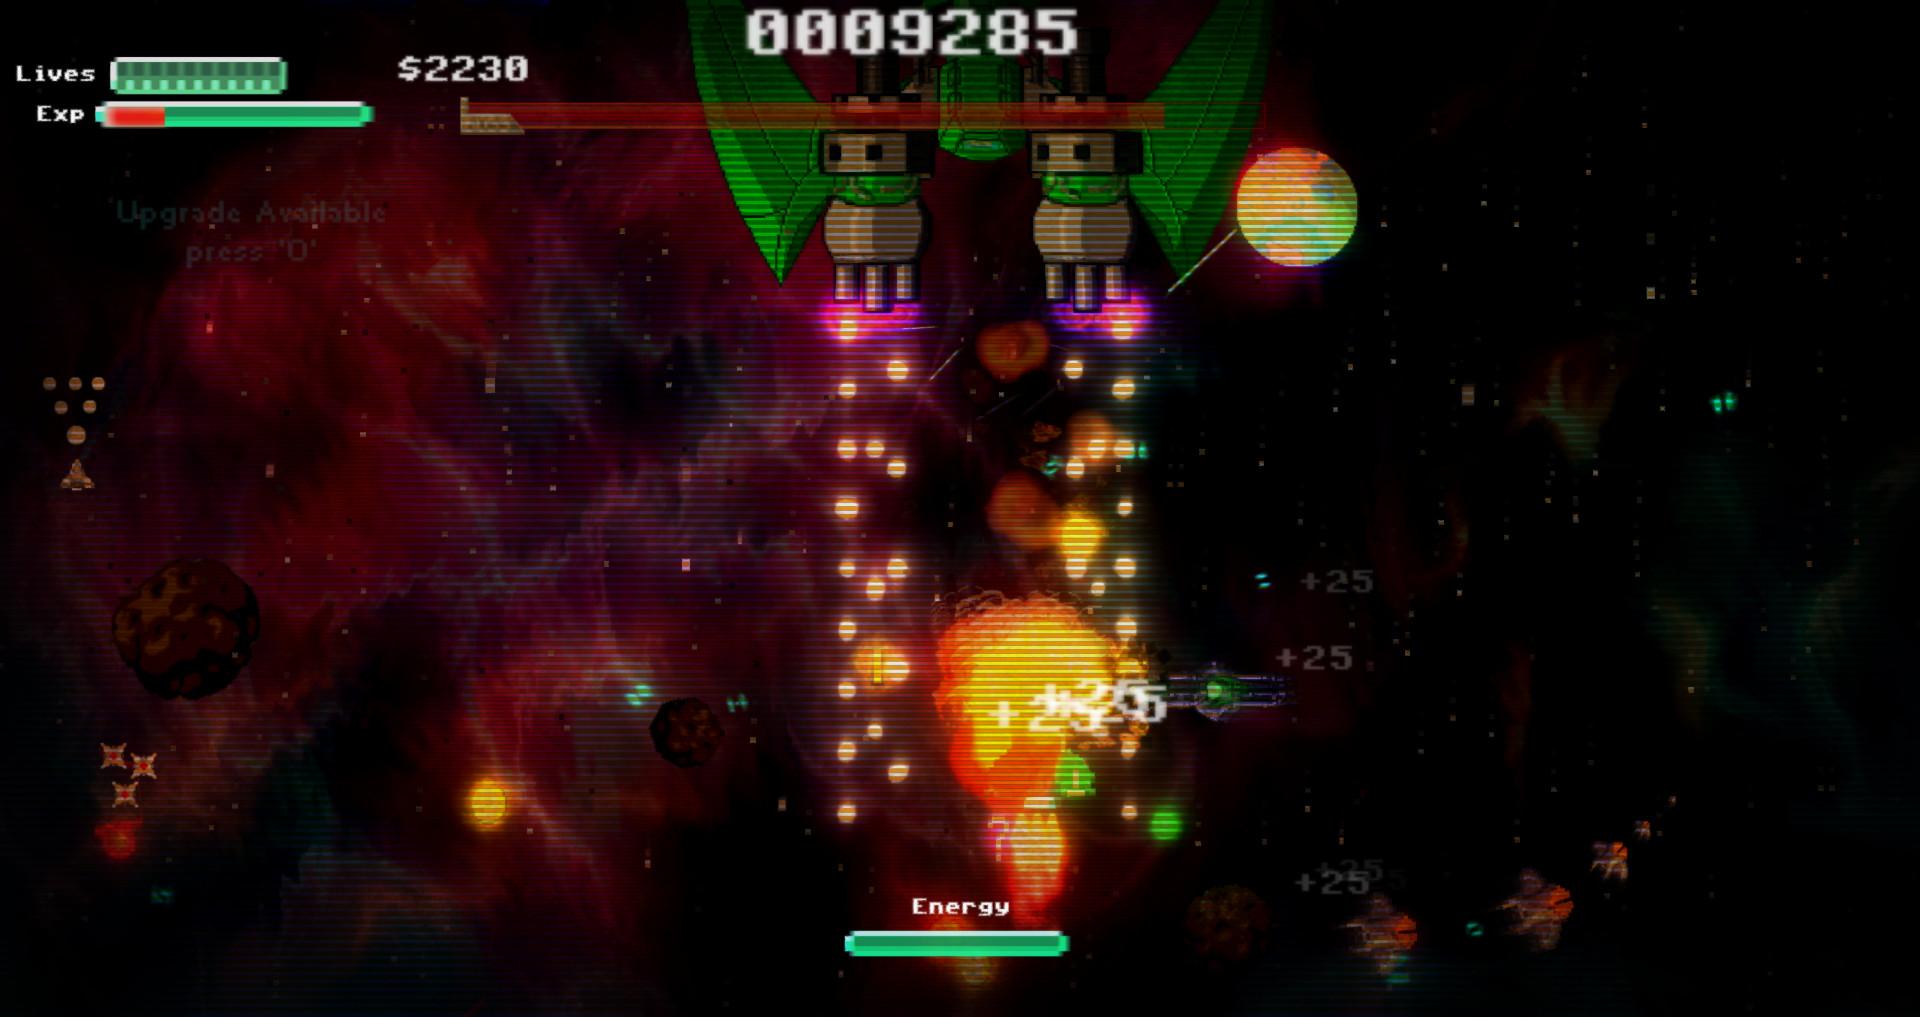 Screenshot №8 from game Star Drifter